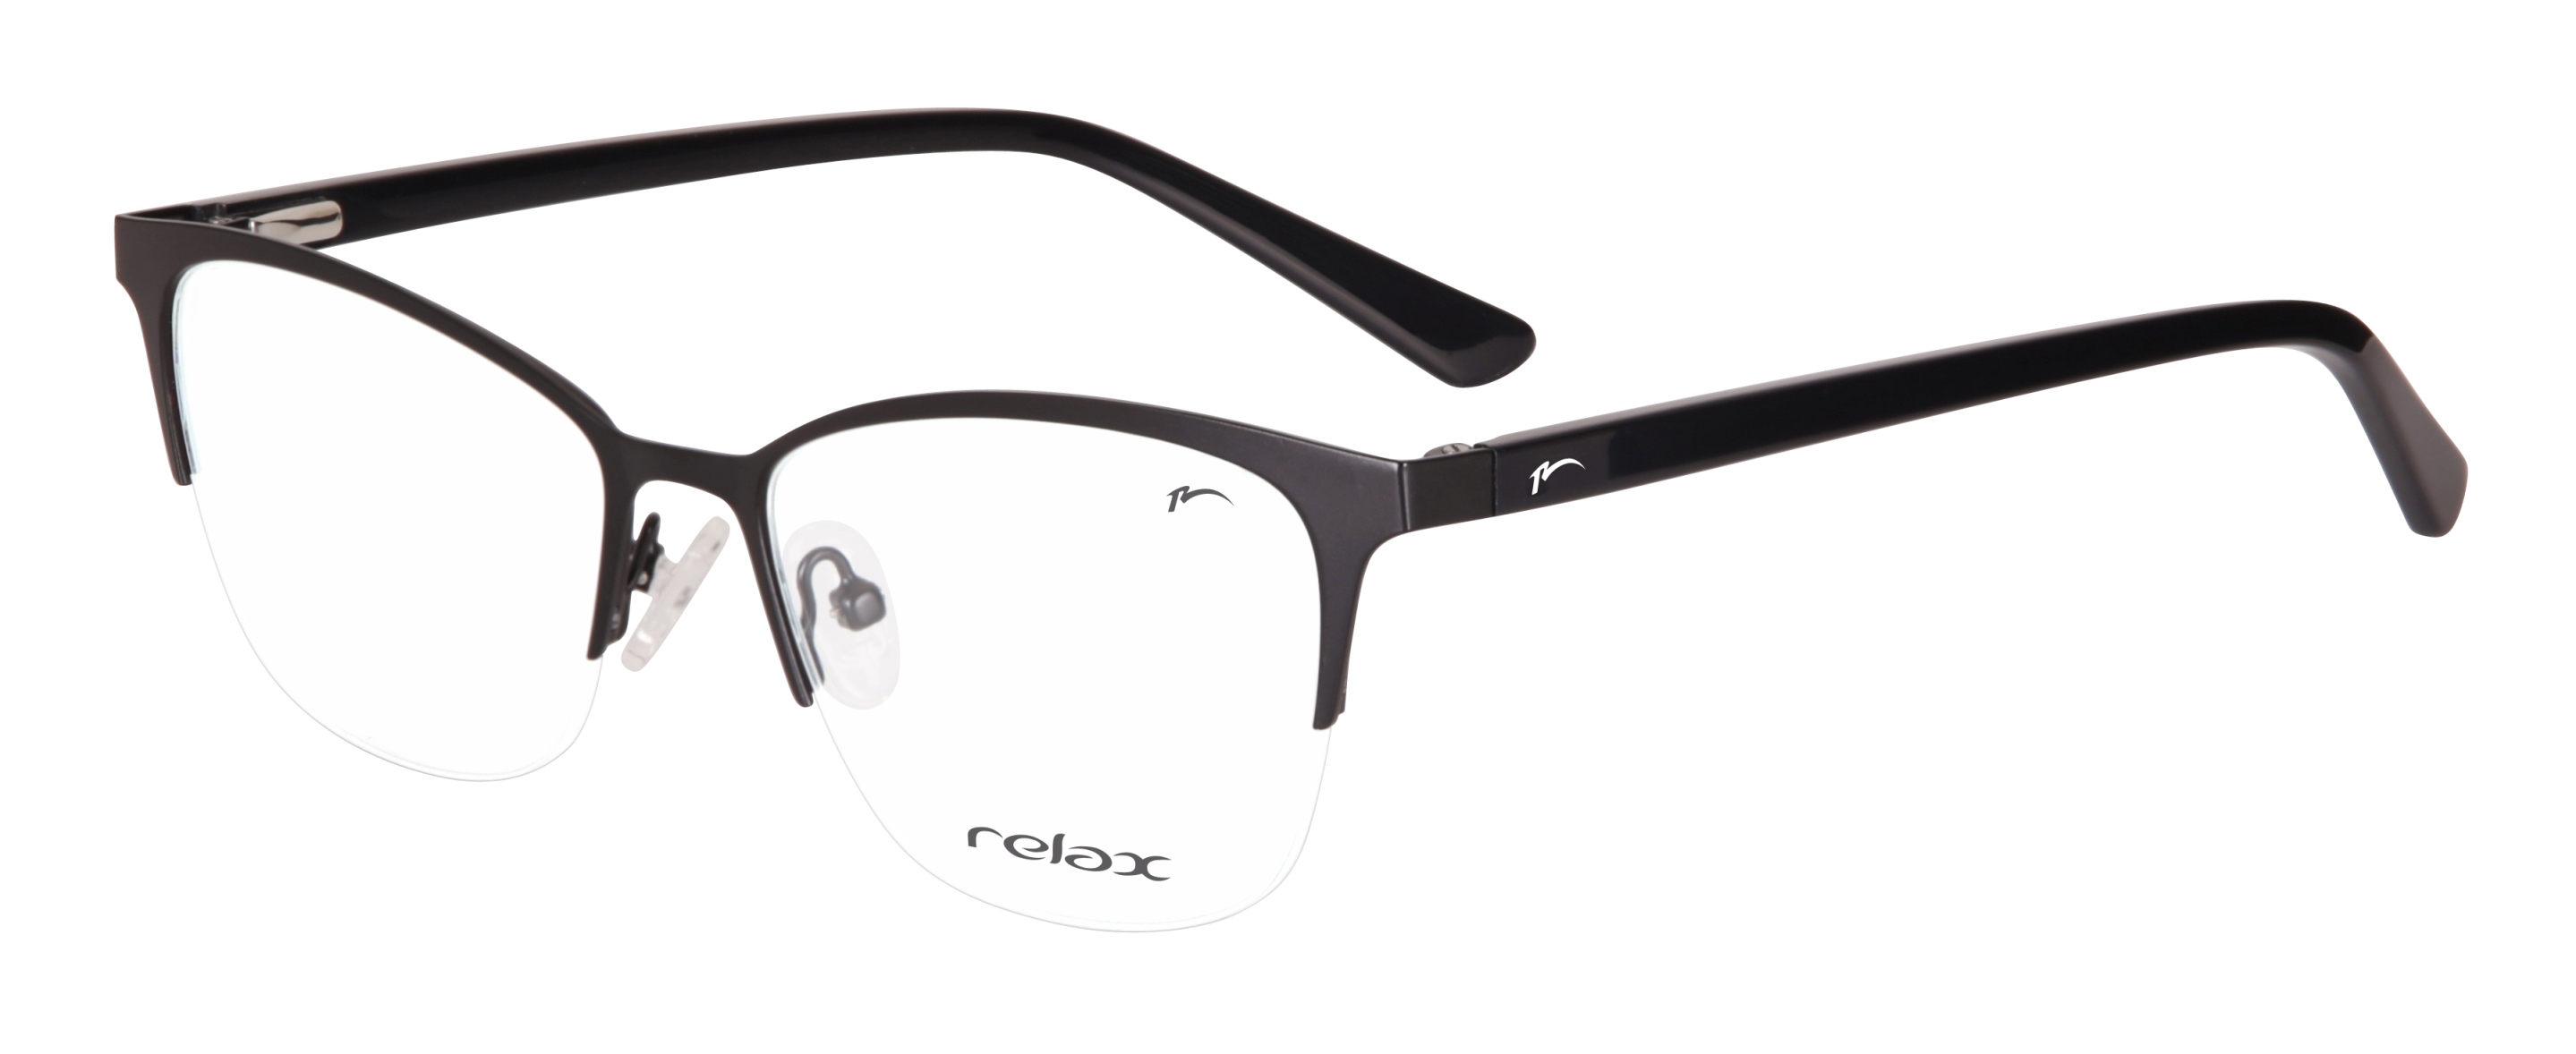 Dioptrické brýle Relax Helen RM124C3 -